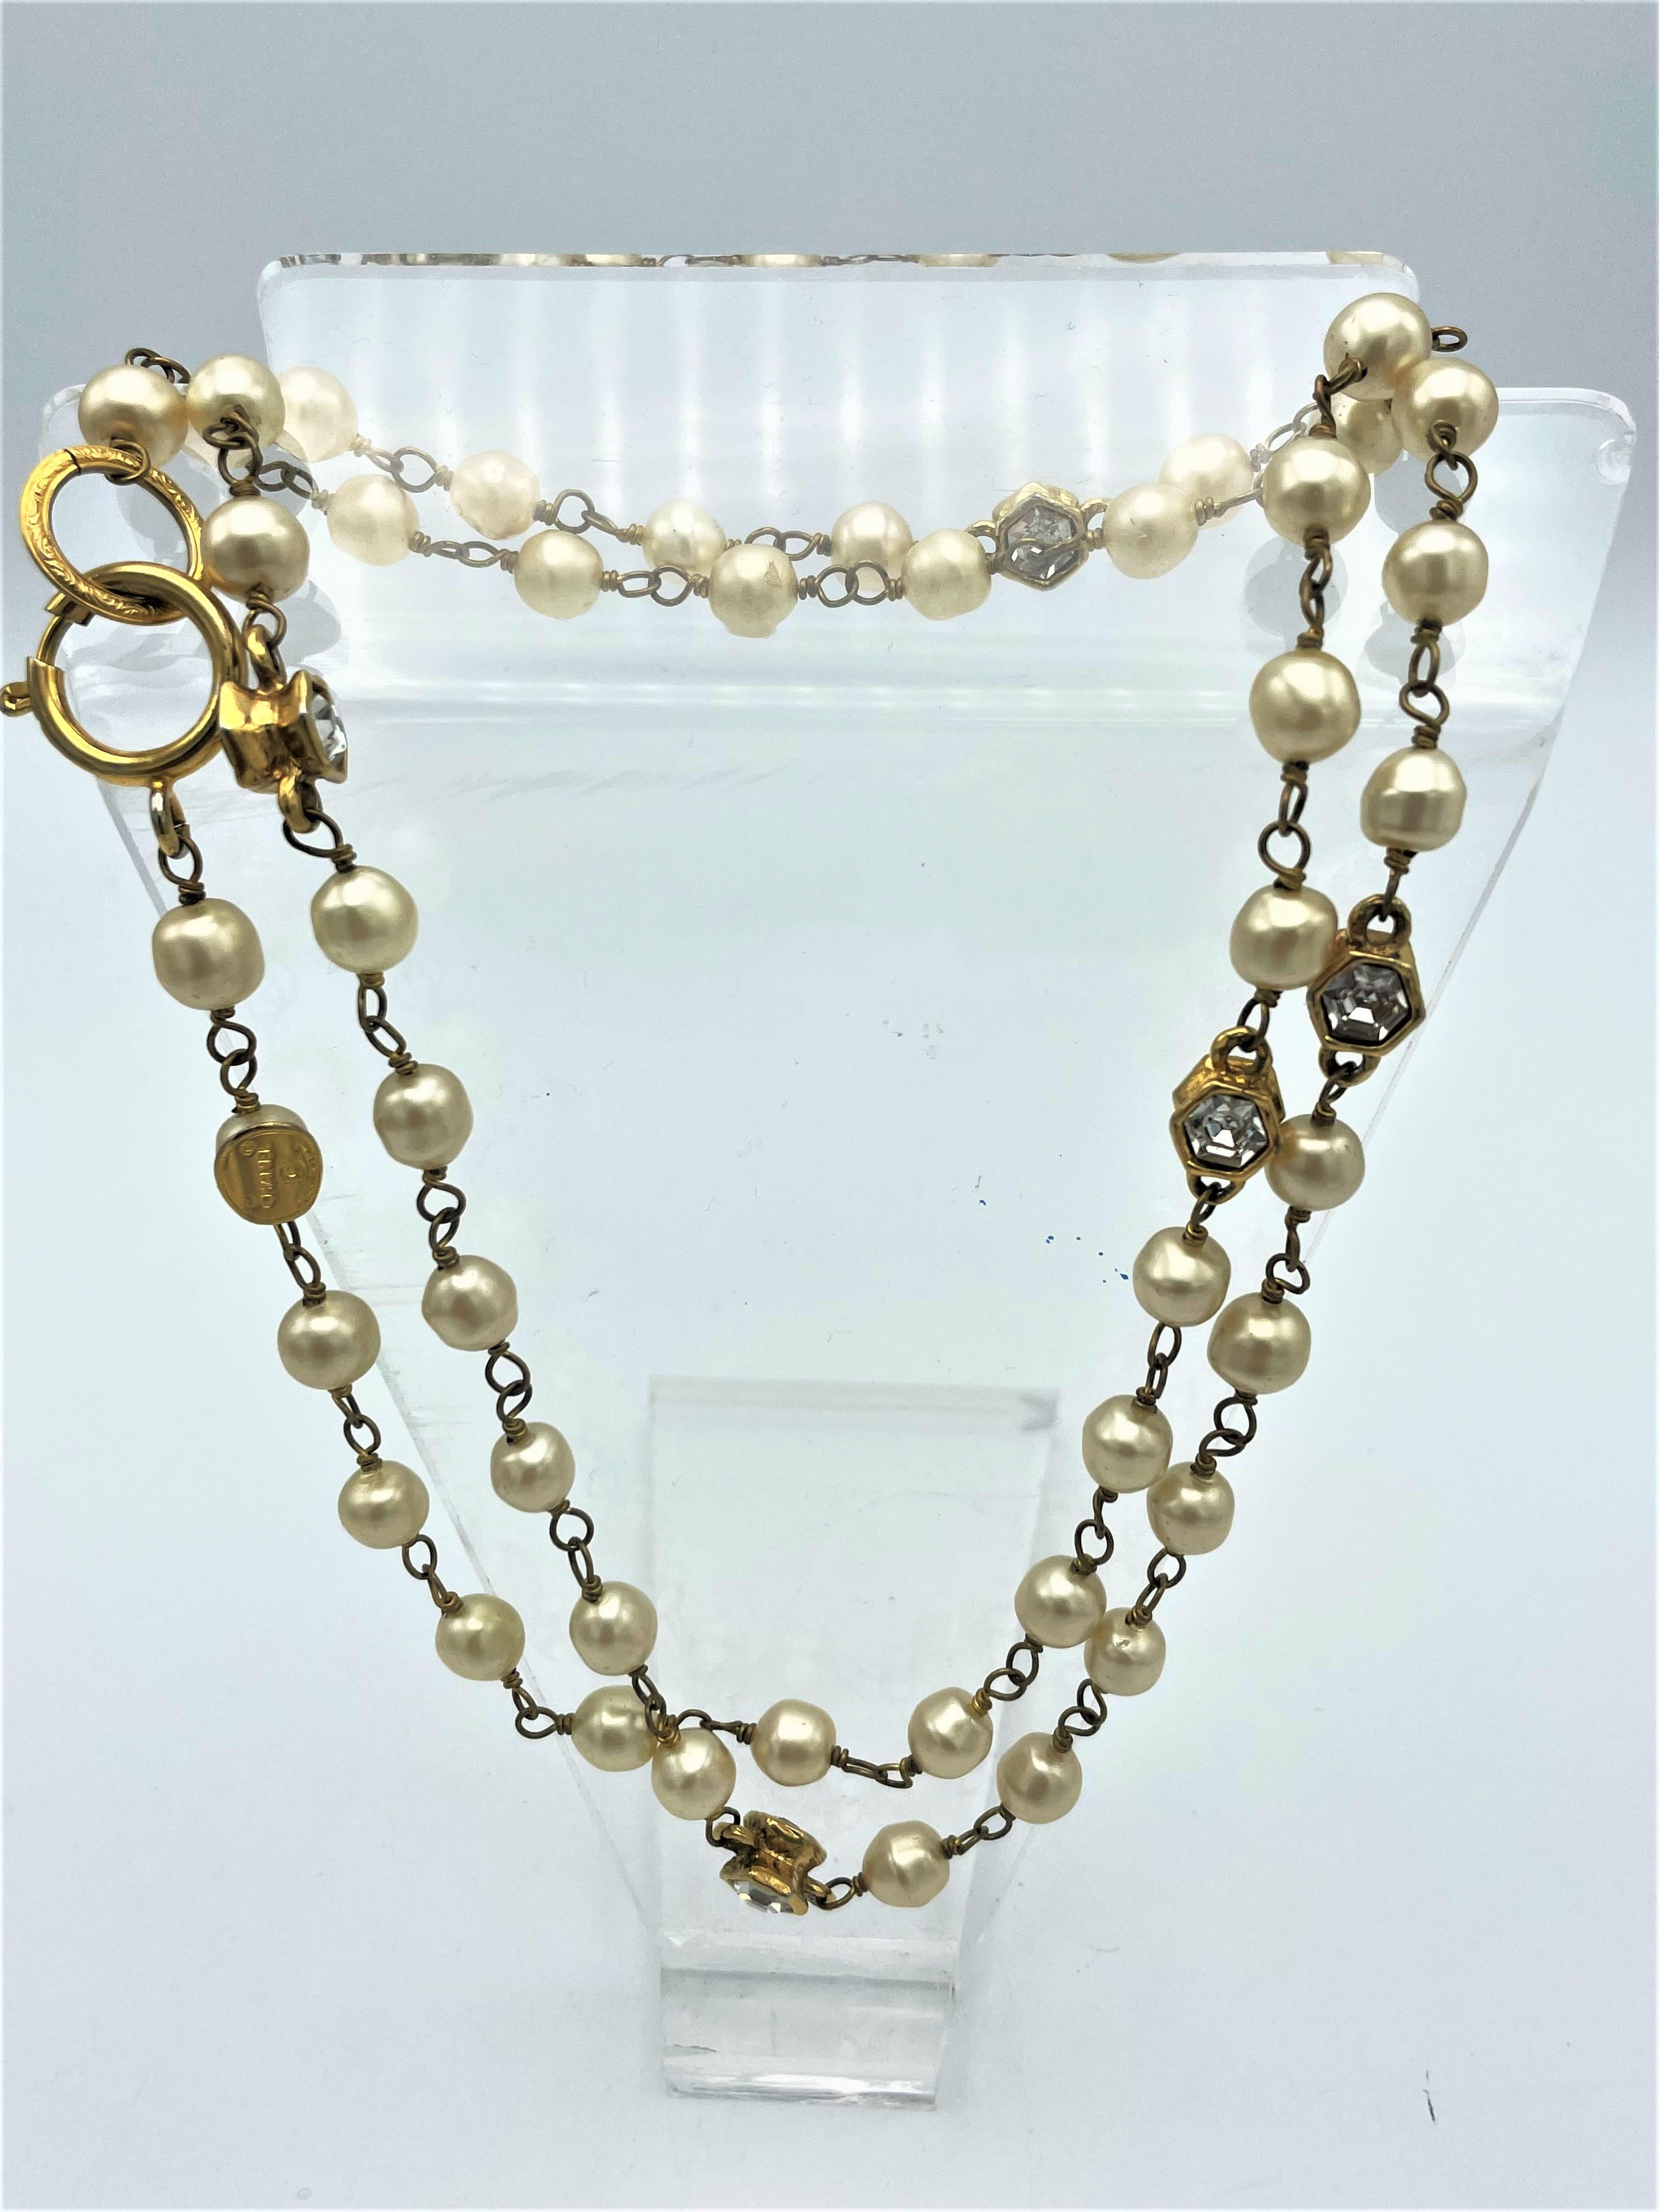 Über
Chanel Halskette mit  Falsche Perlen und 5 sechseckige goldene Formen mit geschliffenen Strasssteinen, doppelseitig. 5 polierte Strasssteine auf beiden Seiten, 10 mm hoch und breit. Großartig zu jeder Gelegenheit zu tragen. 
Messung:
Länge: 